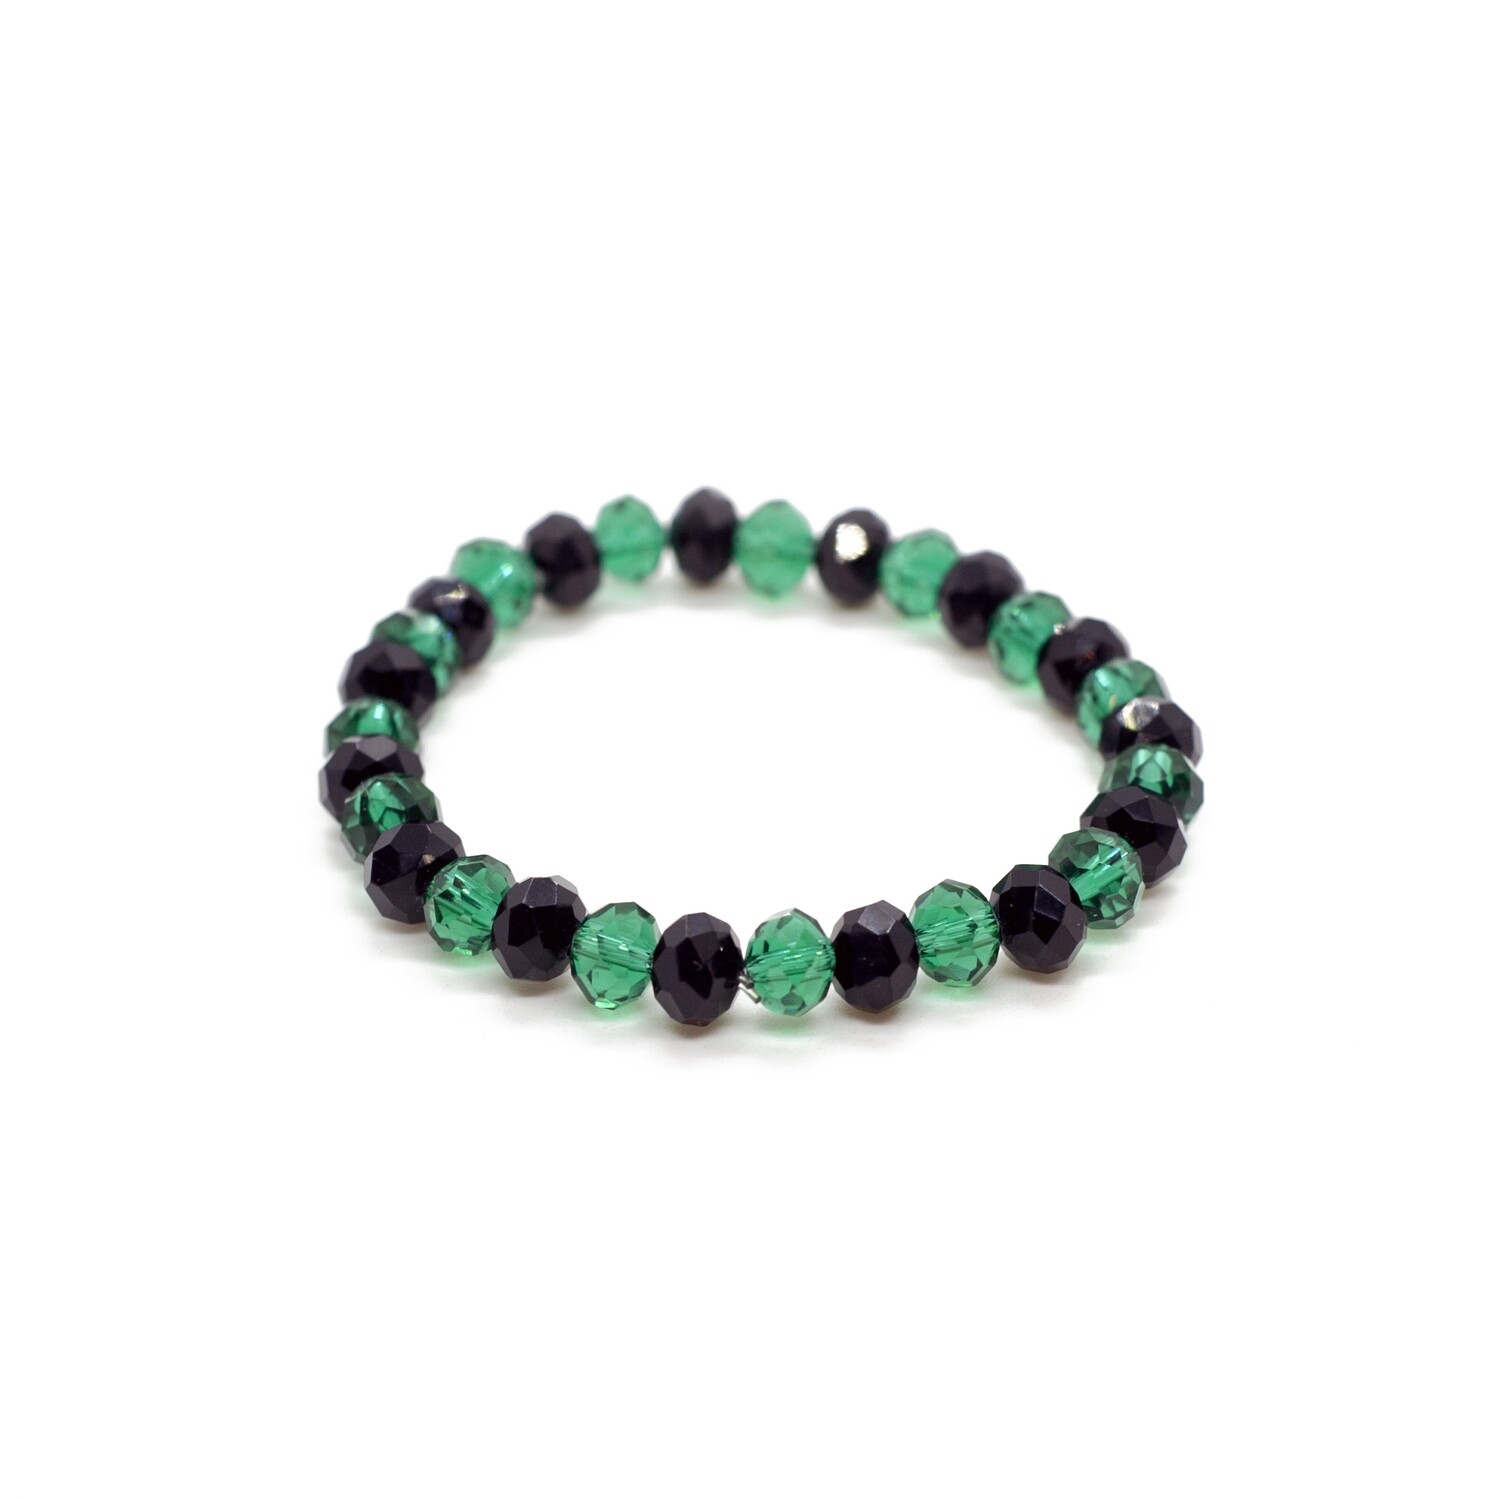 Green and black crystal bracelet